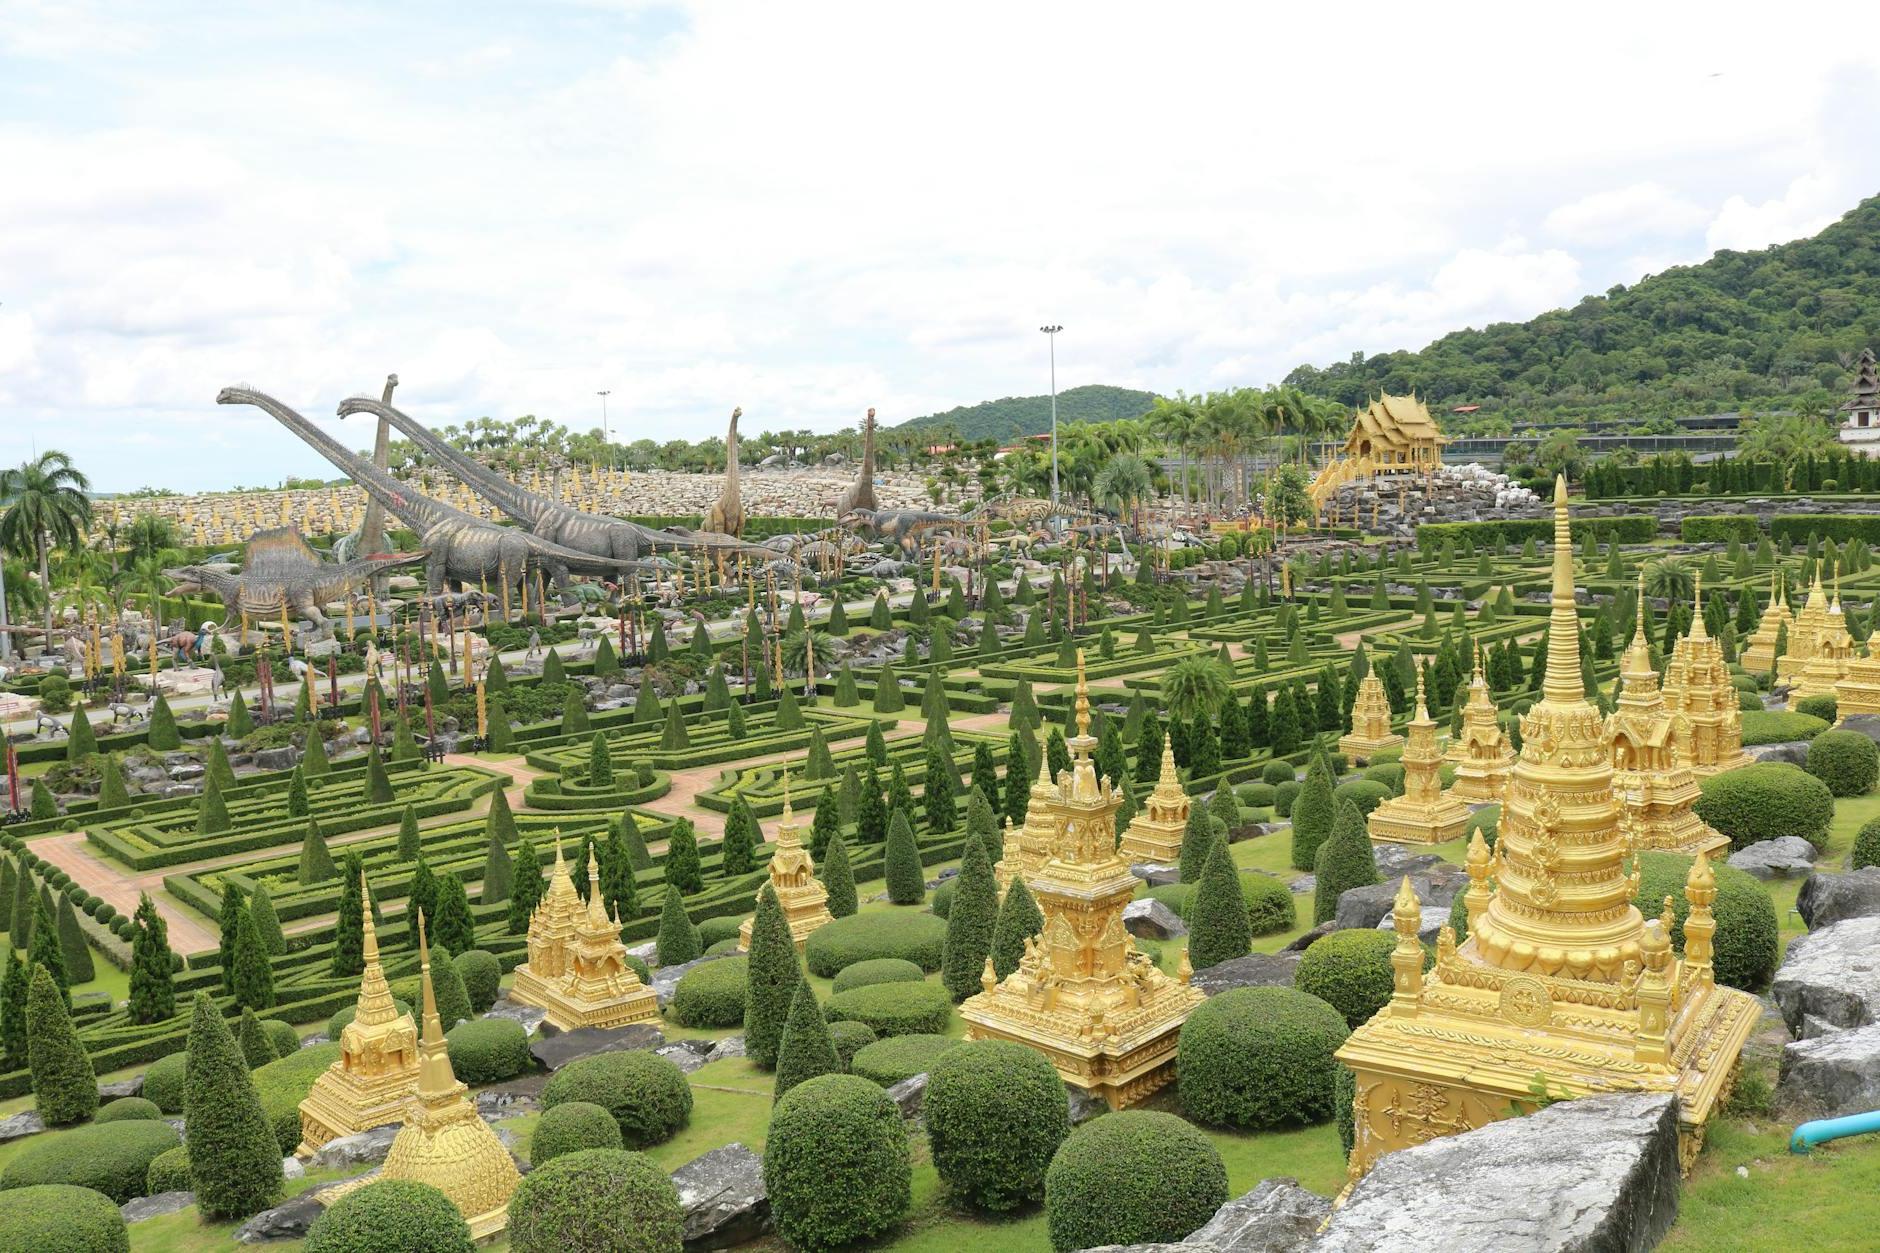 The Nong Nooch Tropical Garden Park in Thailand